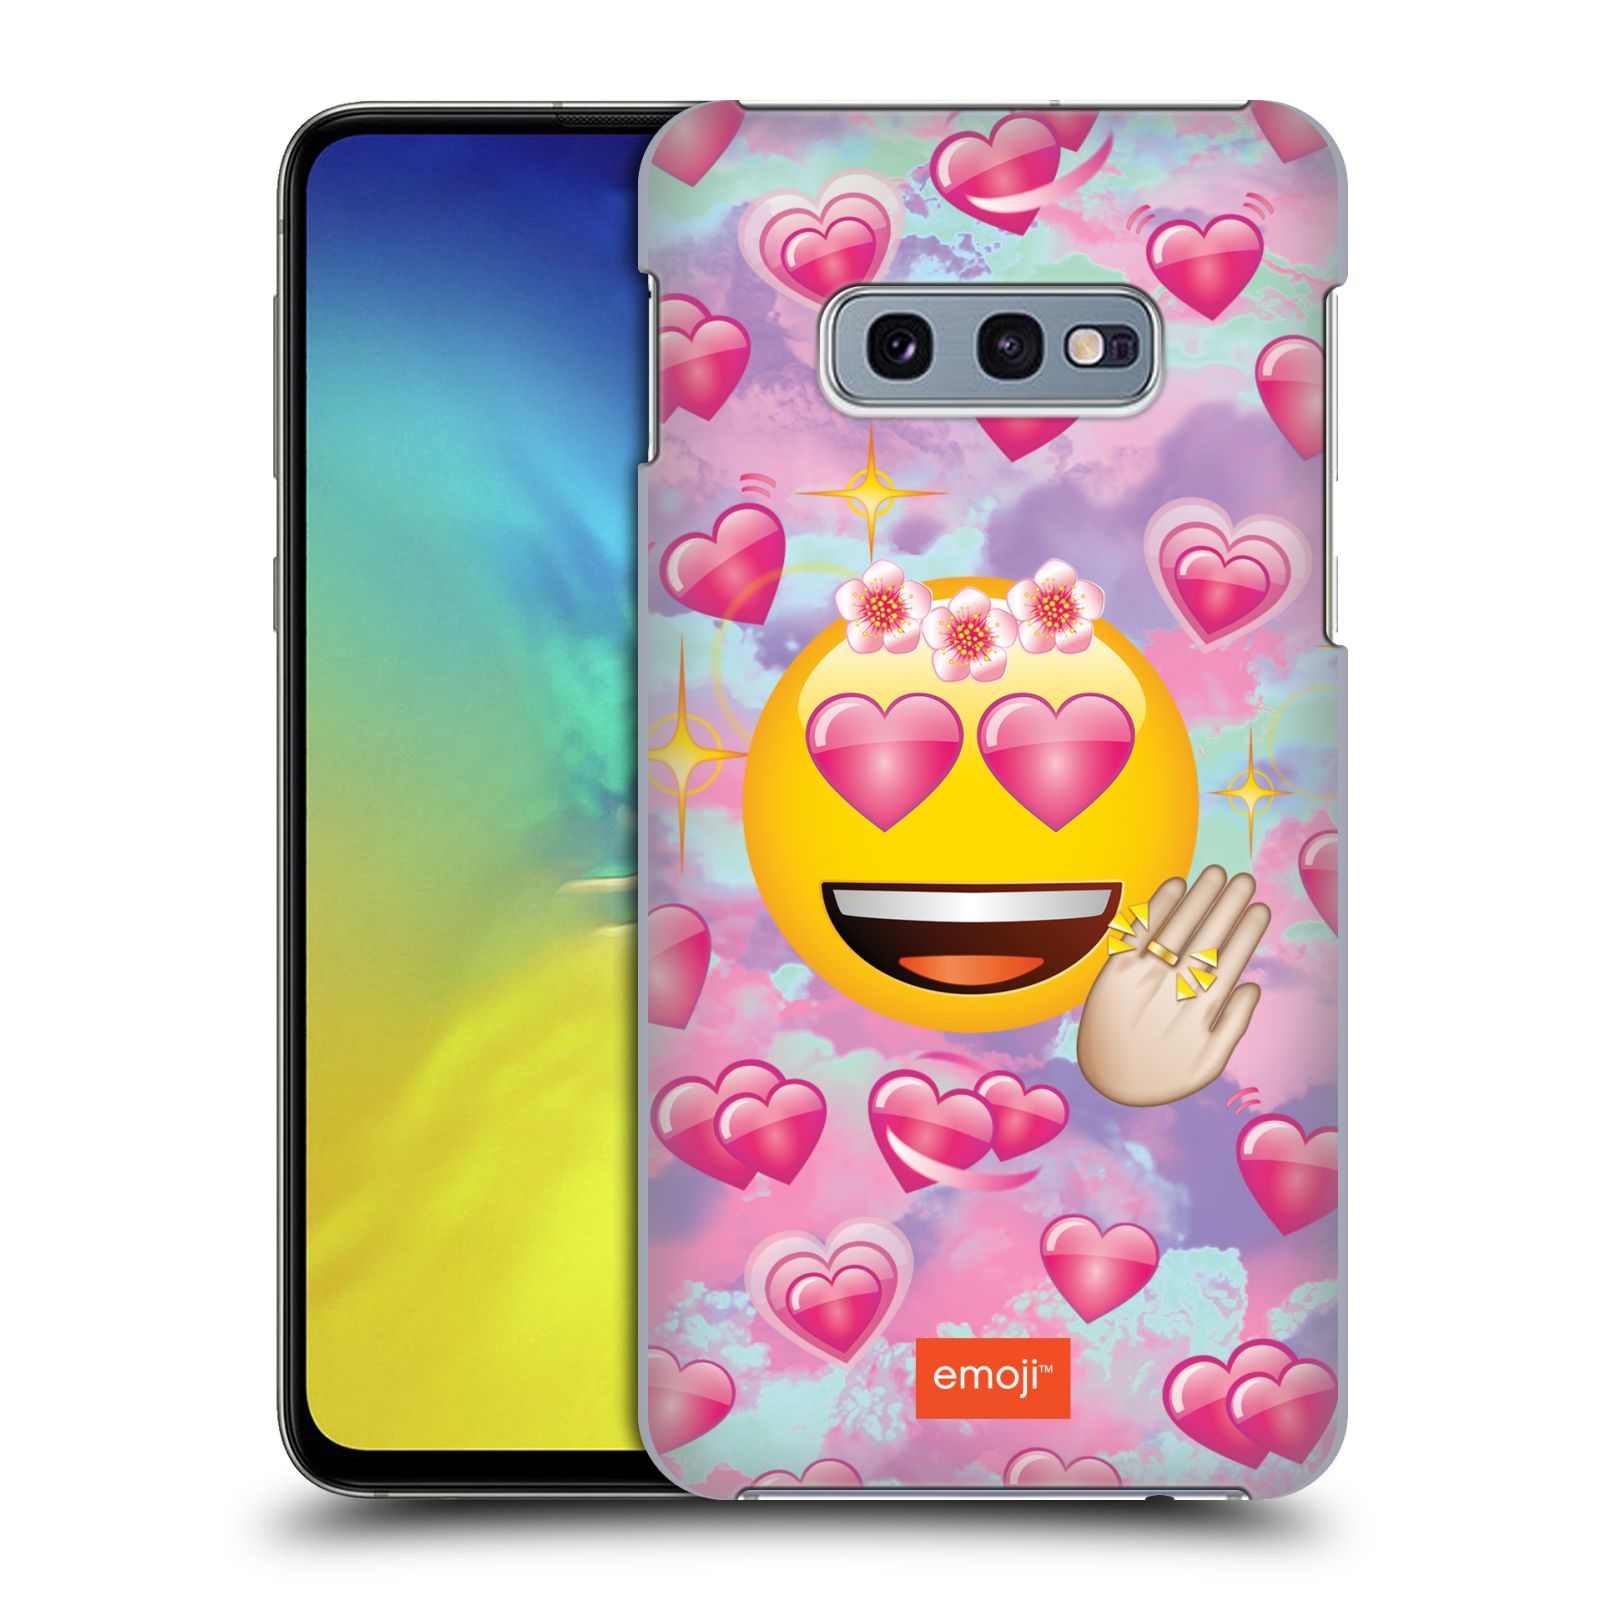 Pouzdro na mobil Samsung Galaxy S10e - HEAD CASE - smajlík oficiální kryt EMOJI velký smajlík růžová srdíčka